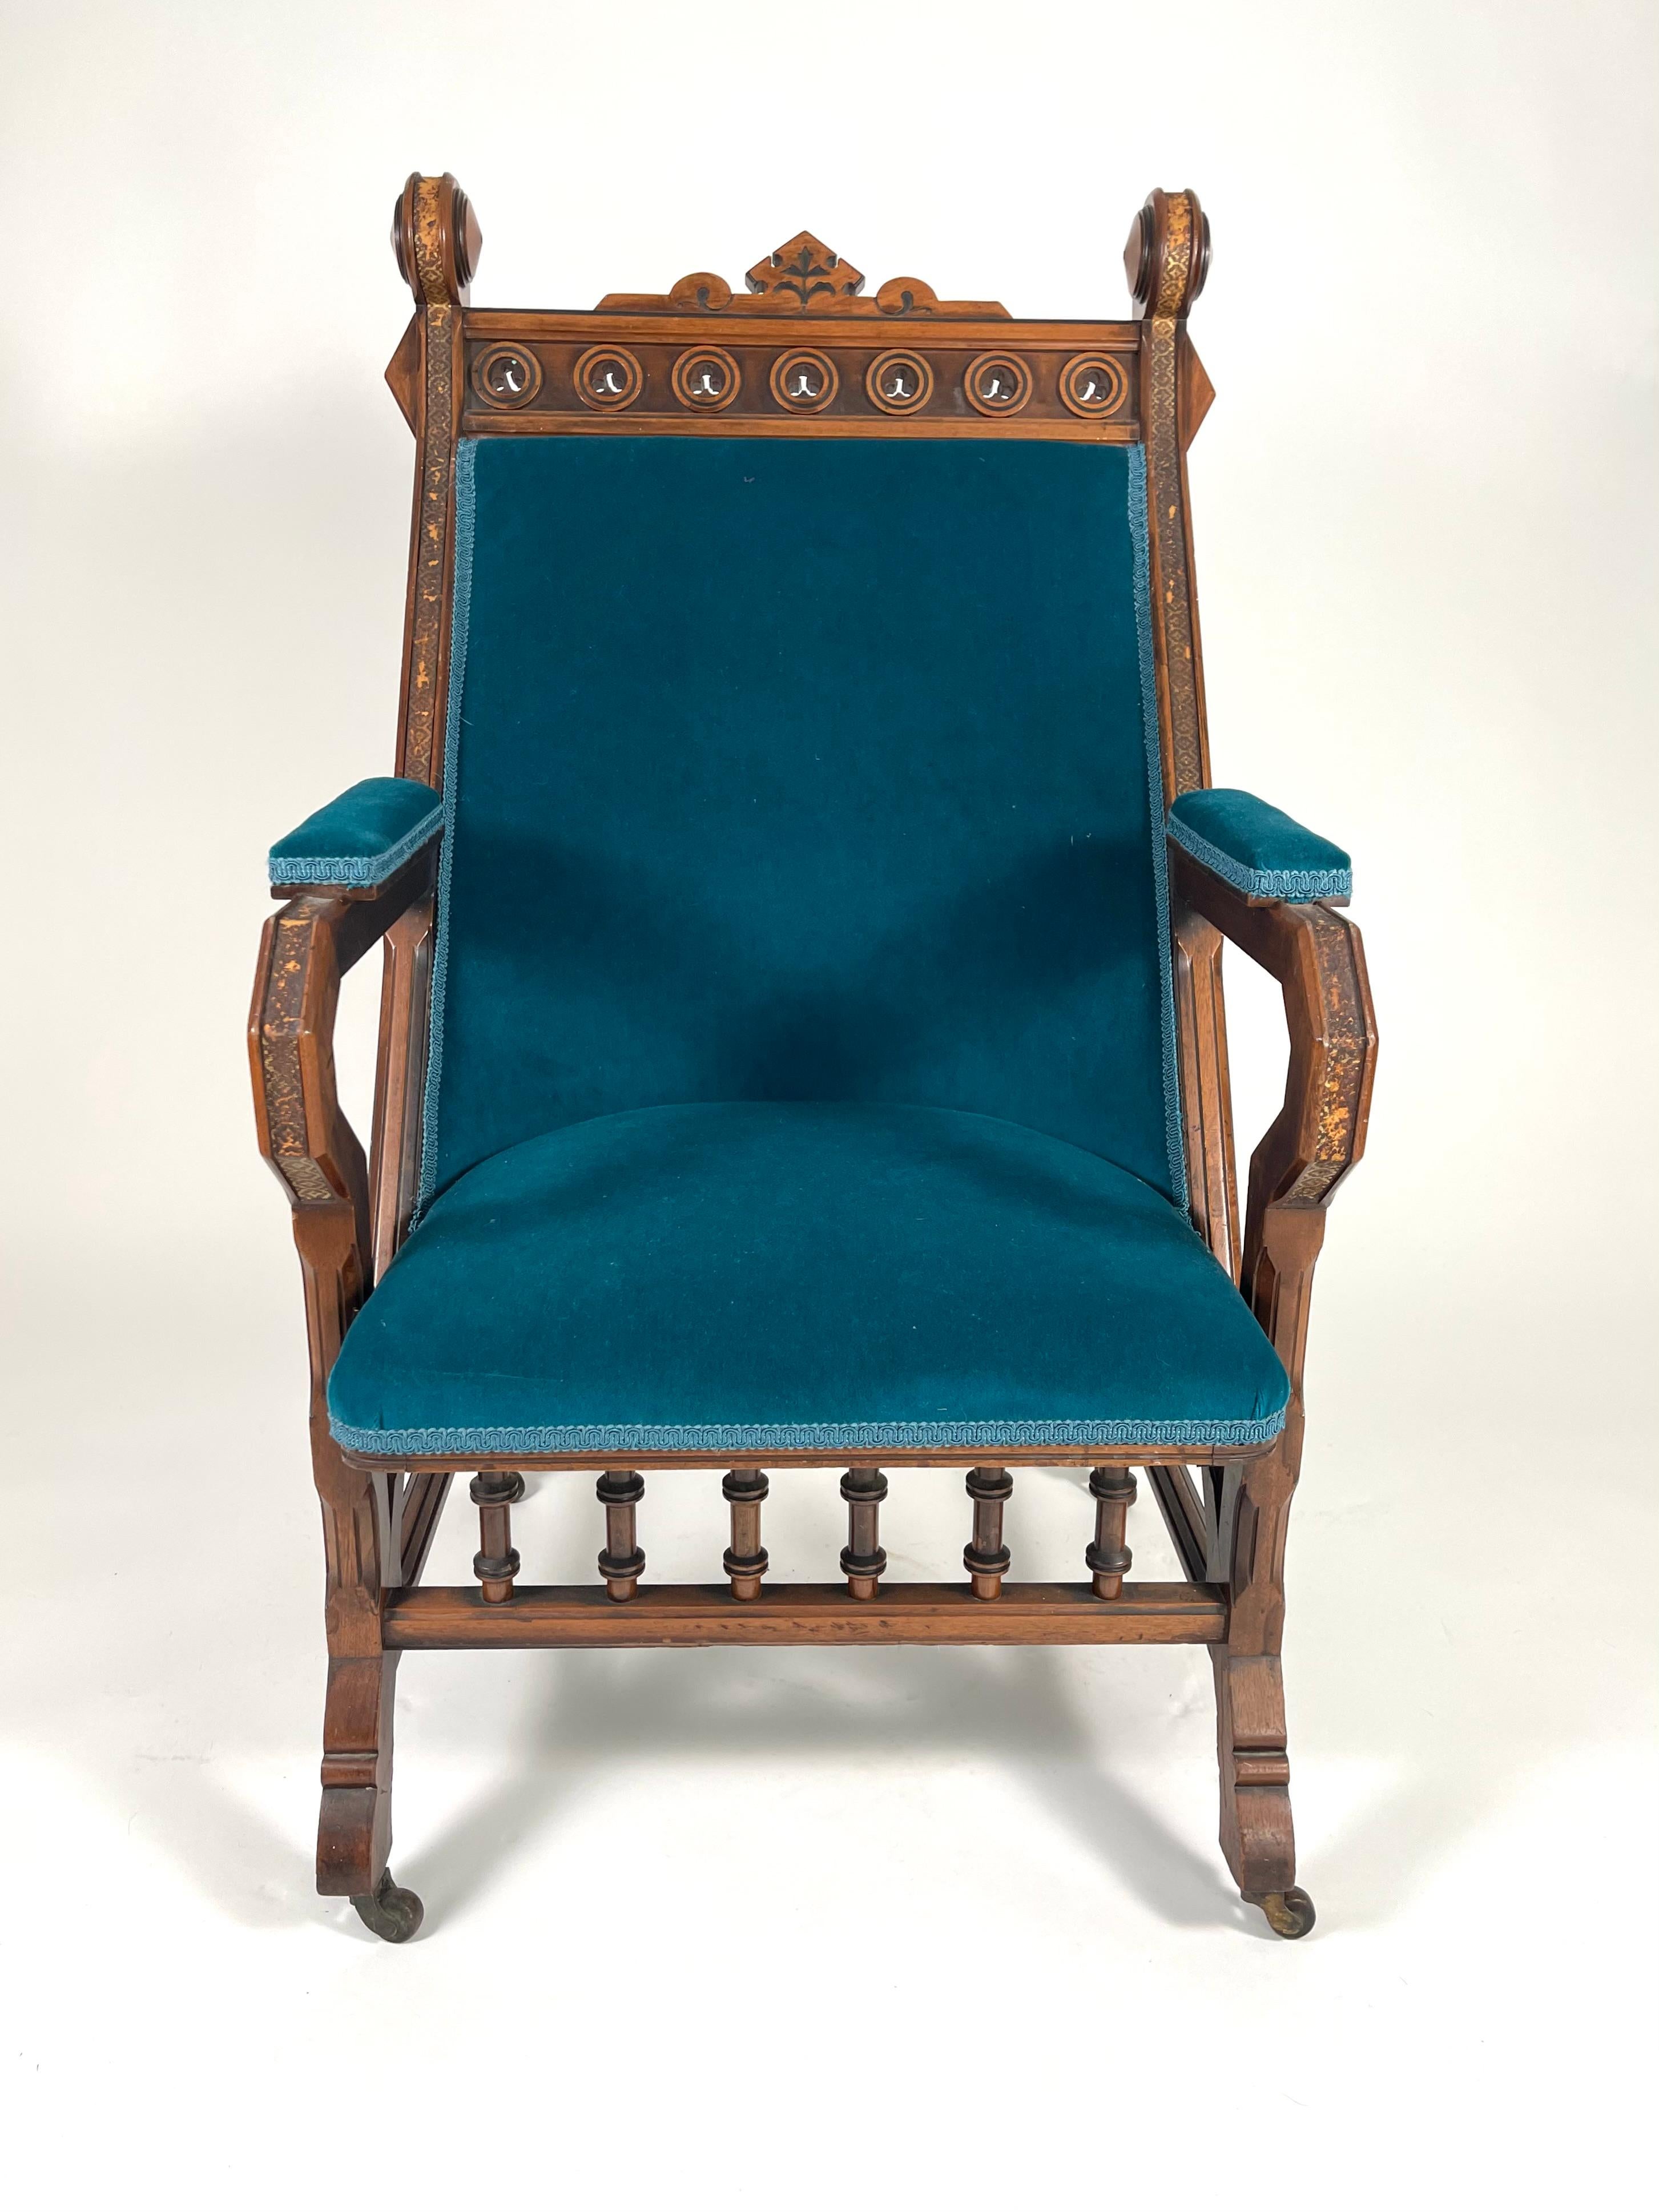 Gotischer Revival-Sessel aus geschnitztem Nussbaumholz des 19. Jahrhunderts, gepolstert mit türkisfarbenem Samt von Holland und Sherry. Inspiriert durch japanisches Design und englische gotische Ornamente, ist die Wappenleiste mit Kreisen und